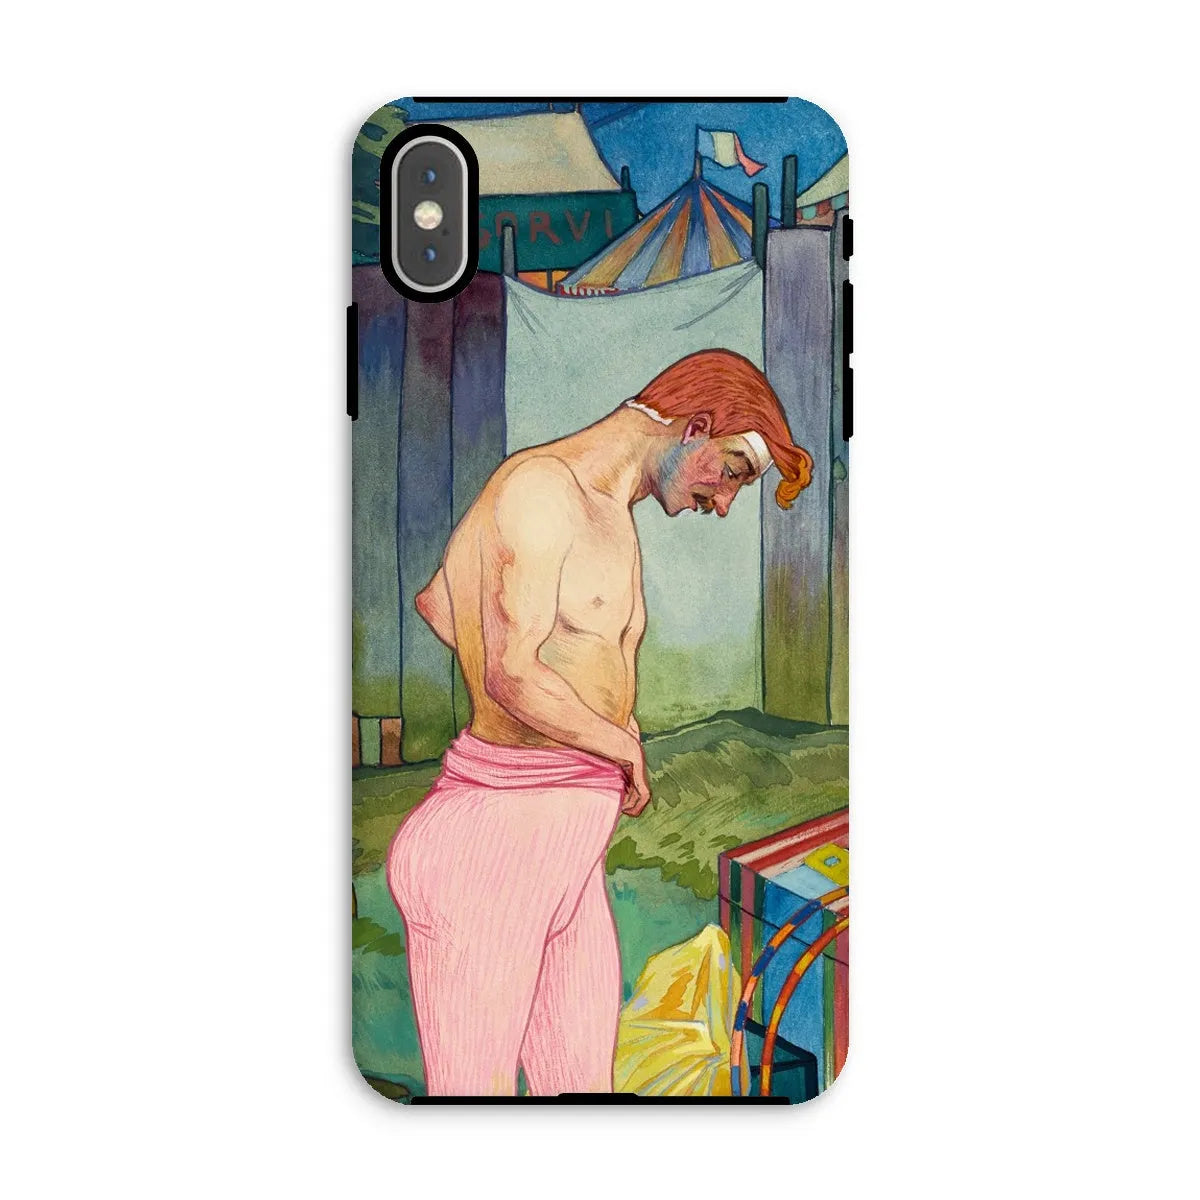 Le Cirque Corvi - Georges De Feure Art Nouveau Phone Case - Iphone Xs Max / Matte - Mobile Phone Cases - Aesthetic Art